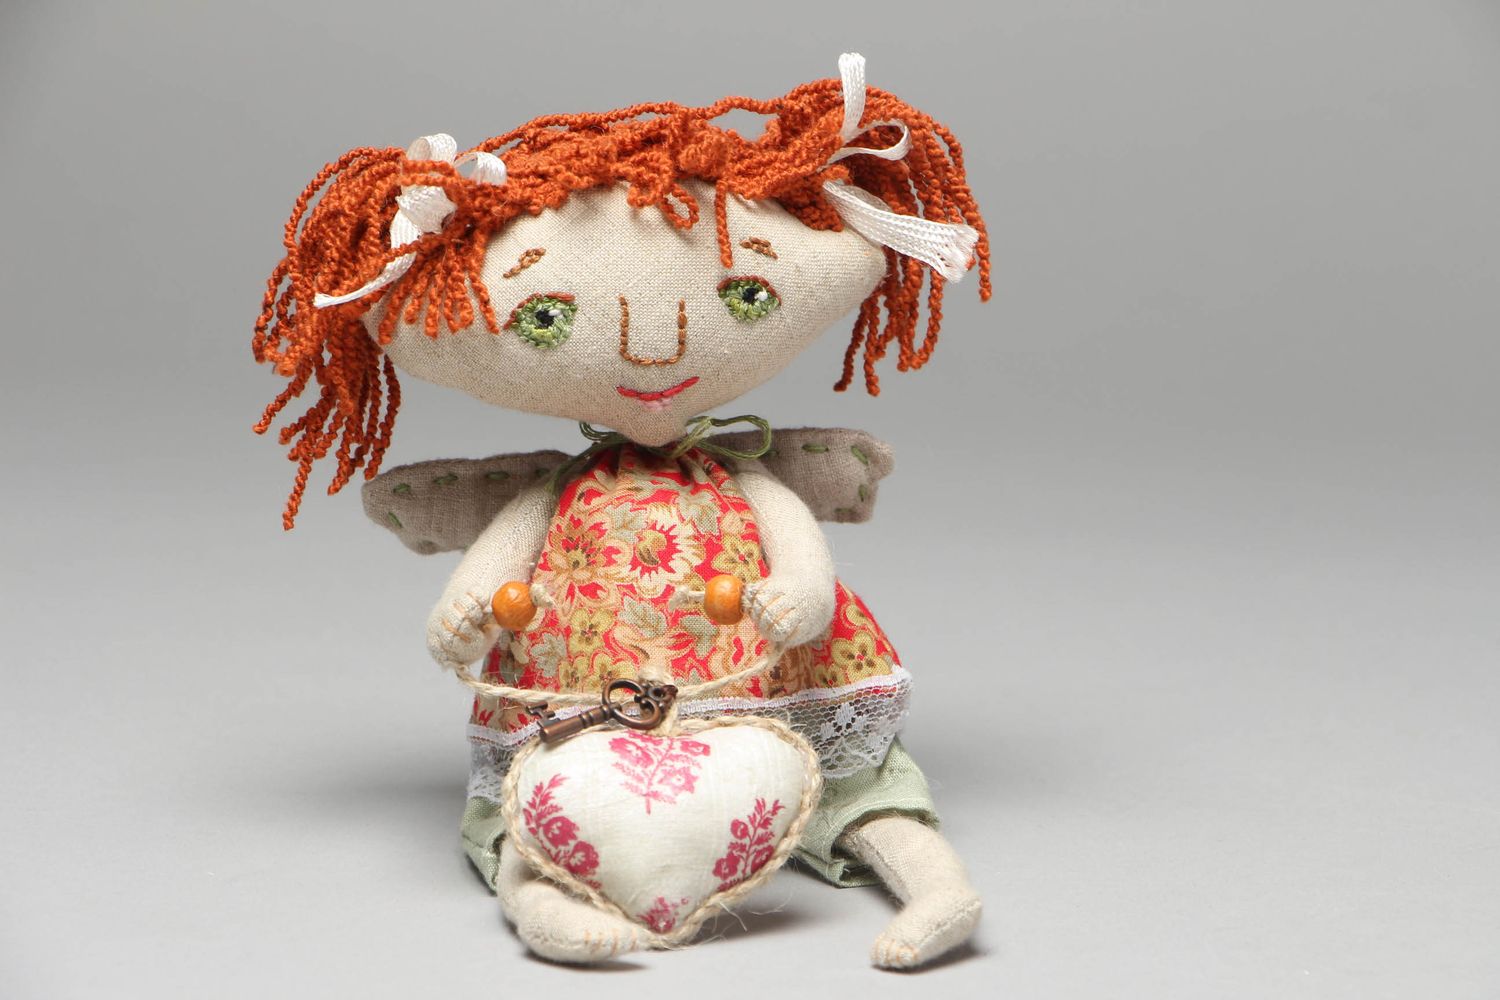 Textil Puppe handmade für Interieur foto 1